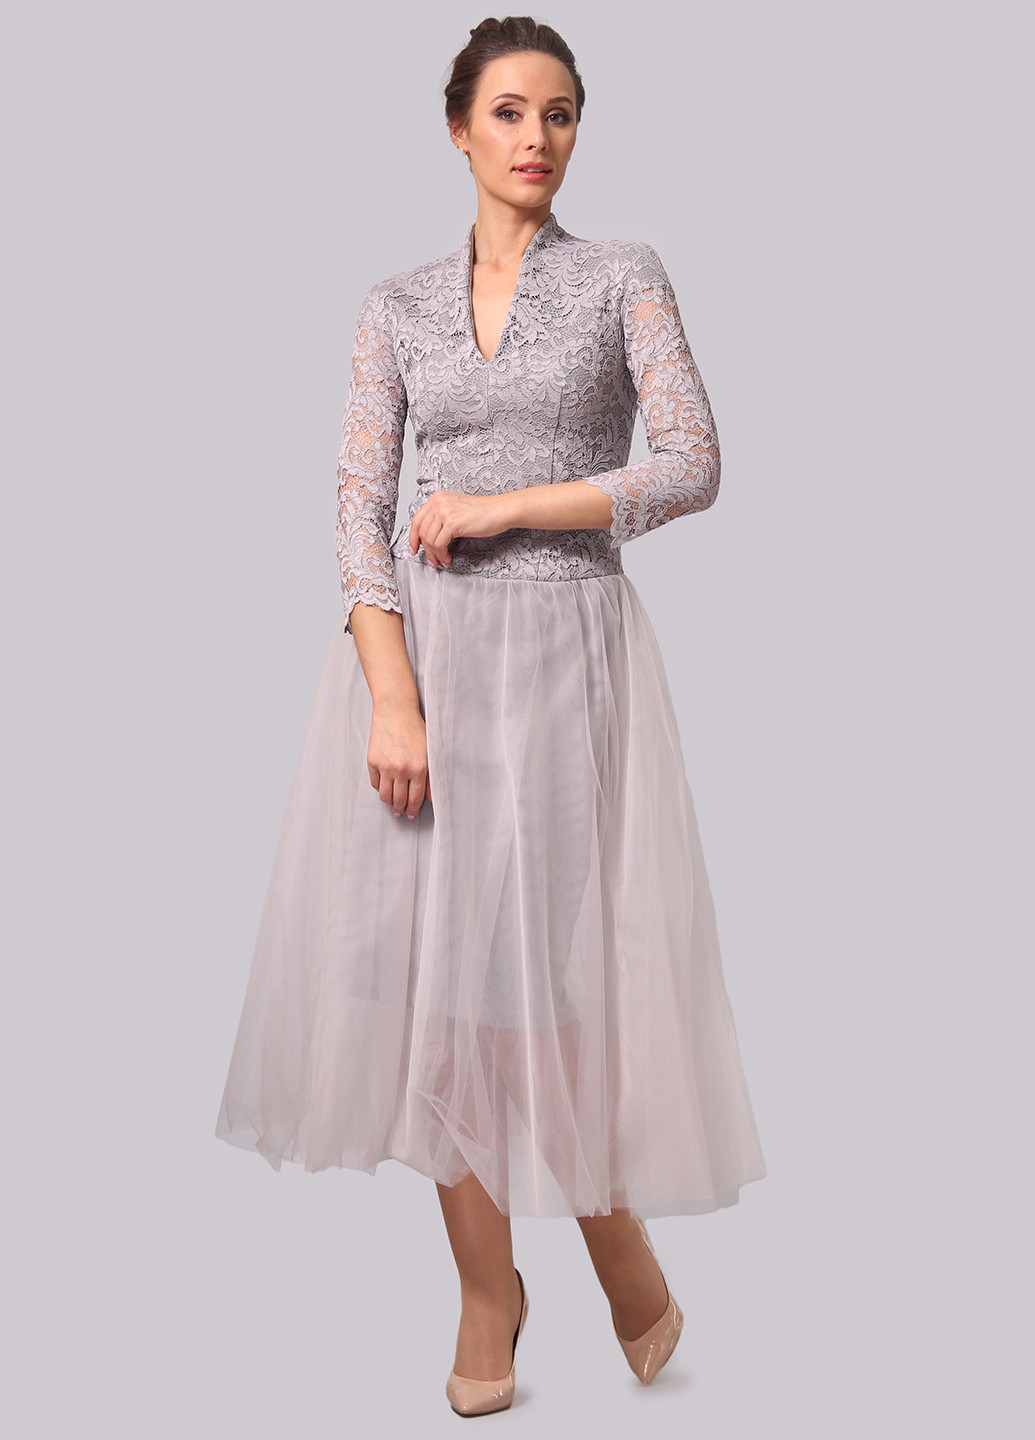 Светло-серое коктейльное платье пачка Alika Kruss однотонное